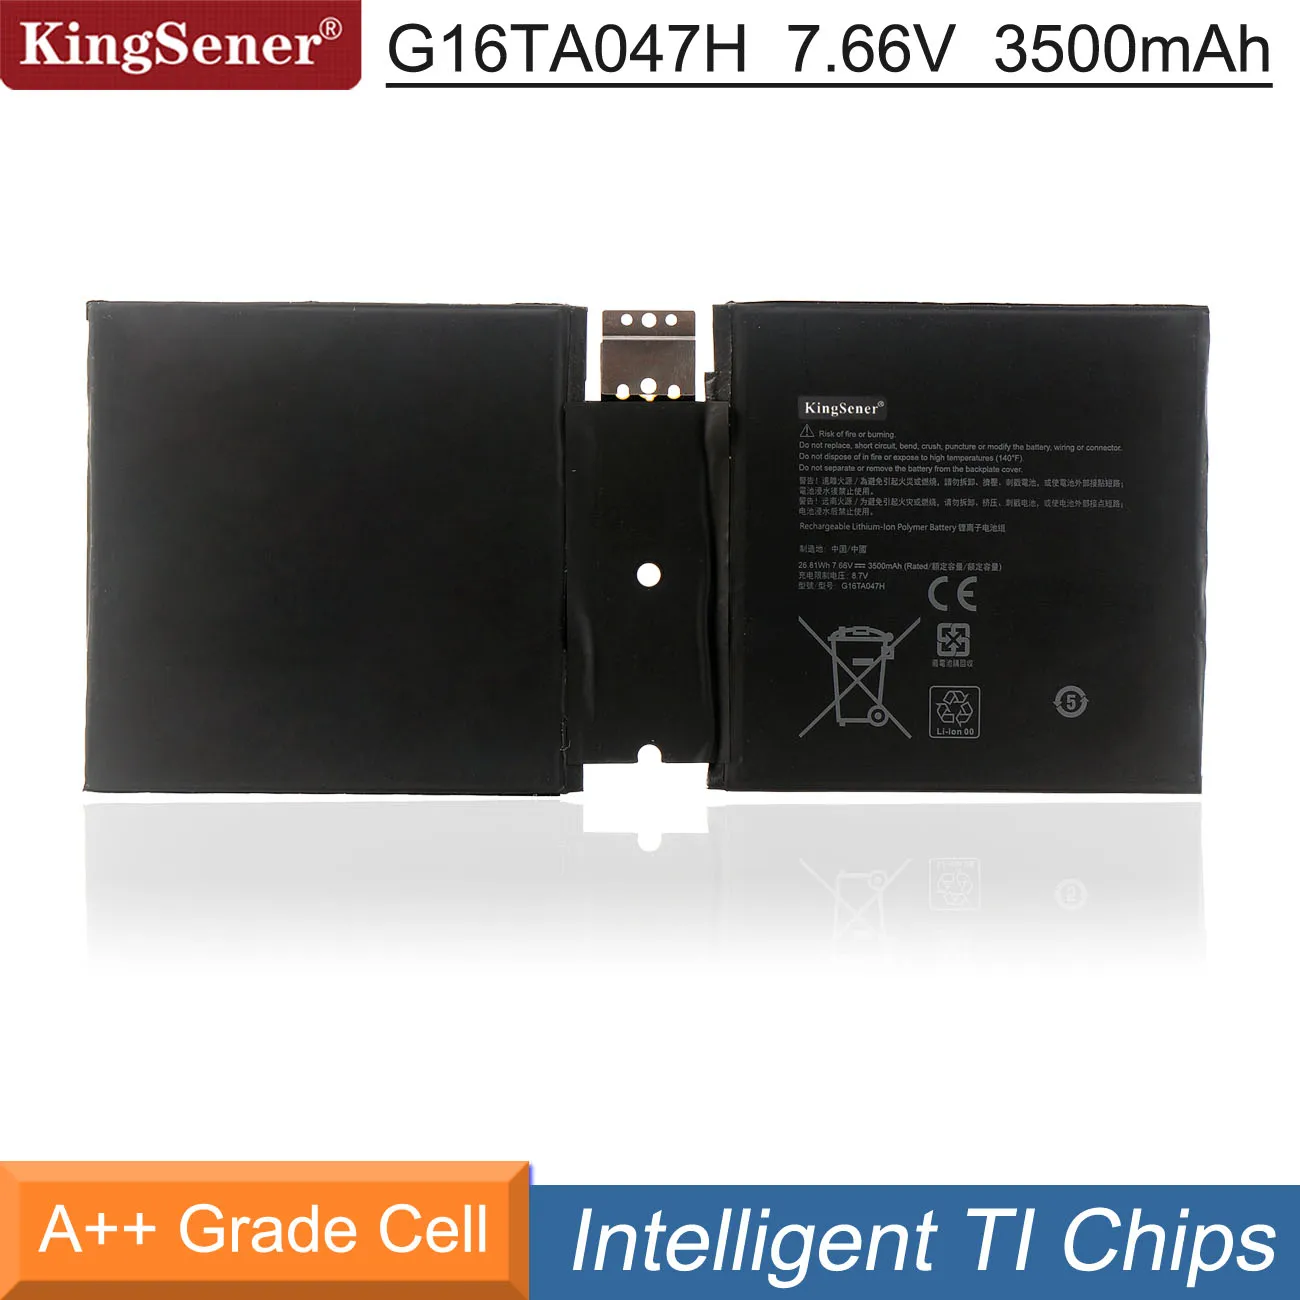 

KingSener G16TA047H DYNU01 Laptop Battery For Microsoft Surface go 2 1901 1926 Series G16TA047H 7.66V 3500mAh